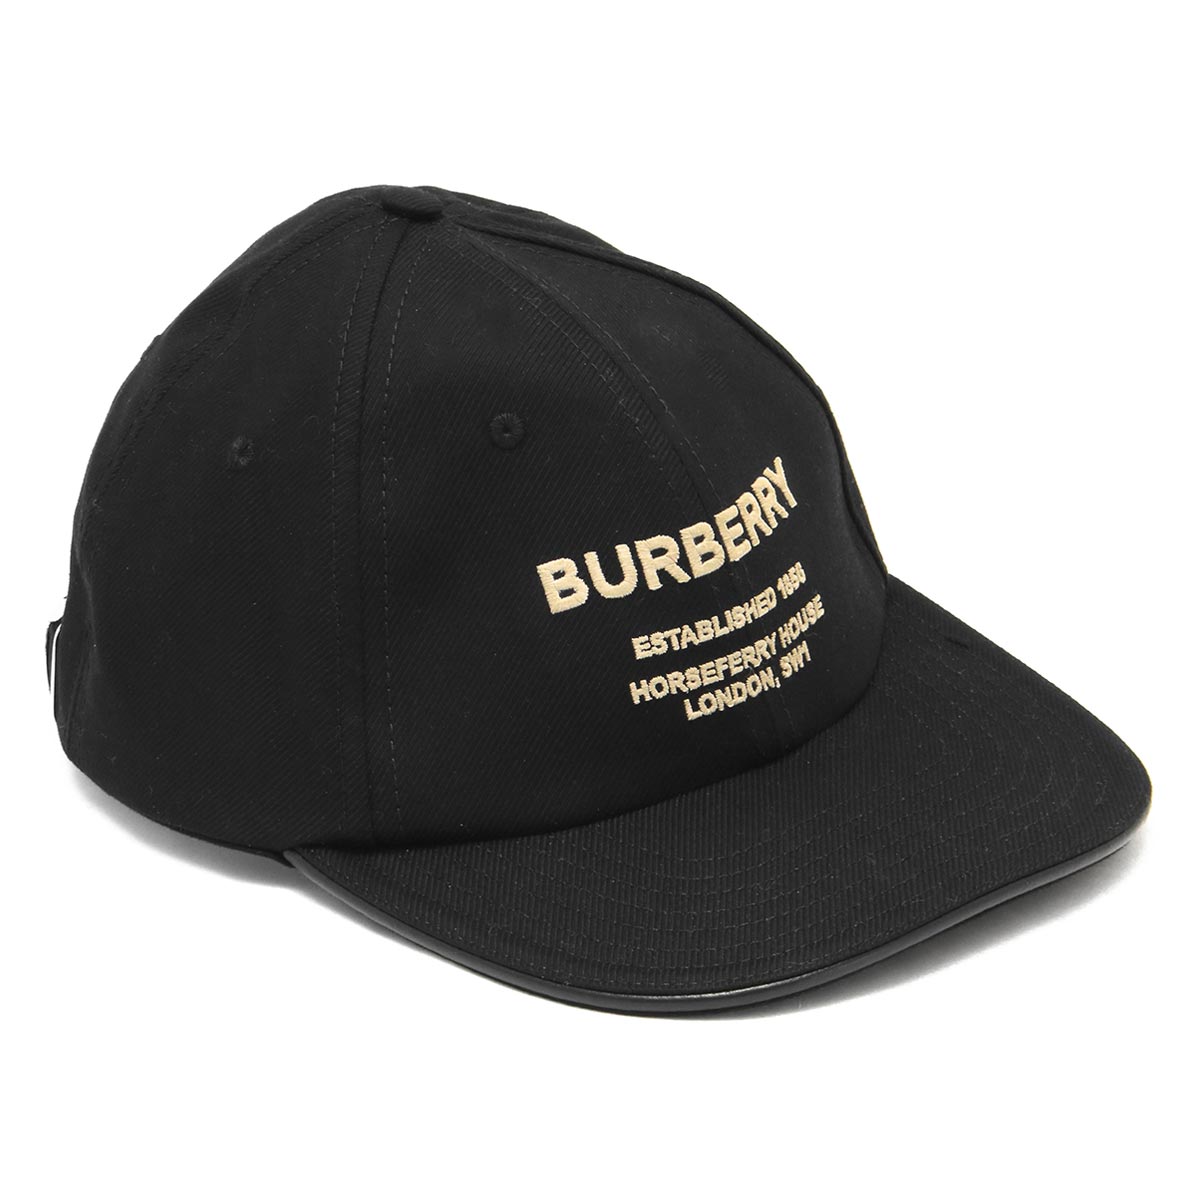 バーバリー キャップ/帽子 メンズ レディース ホースフェリー ブラック&ベージュ MH CF BSB BURBERRY EST 121272 B1047 8057625 BURBERRYのサムネイル